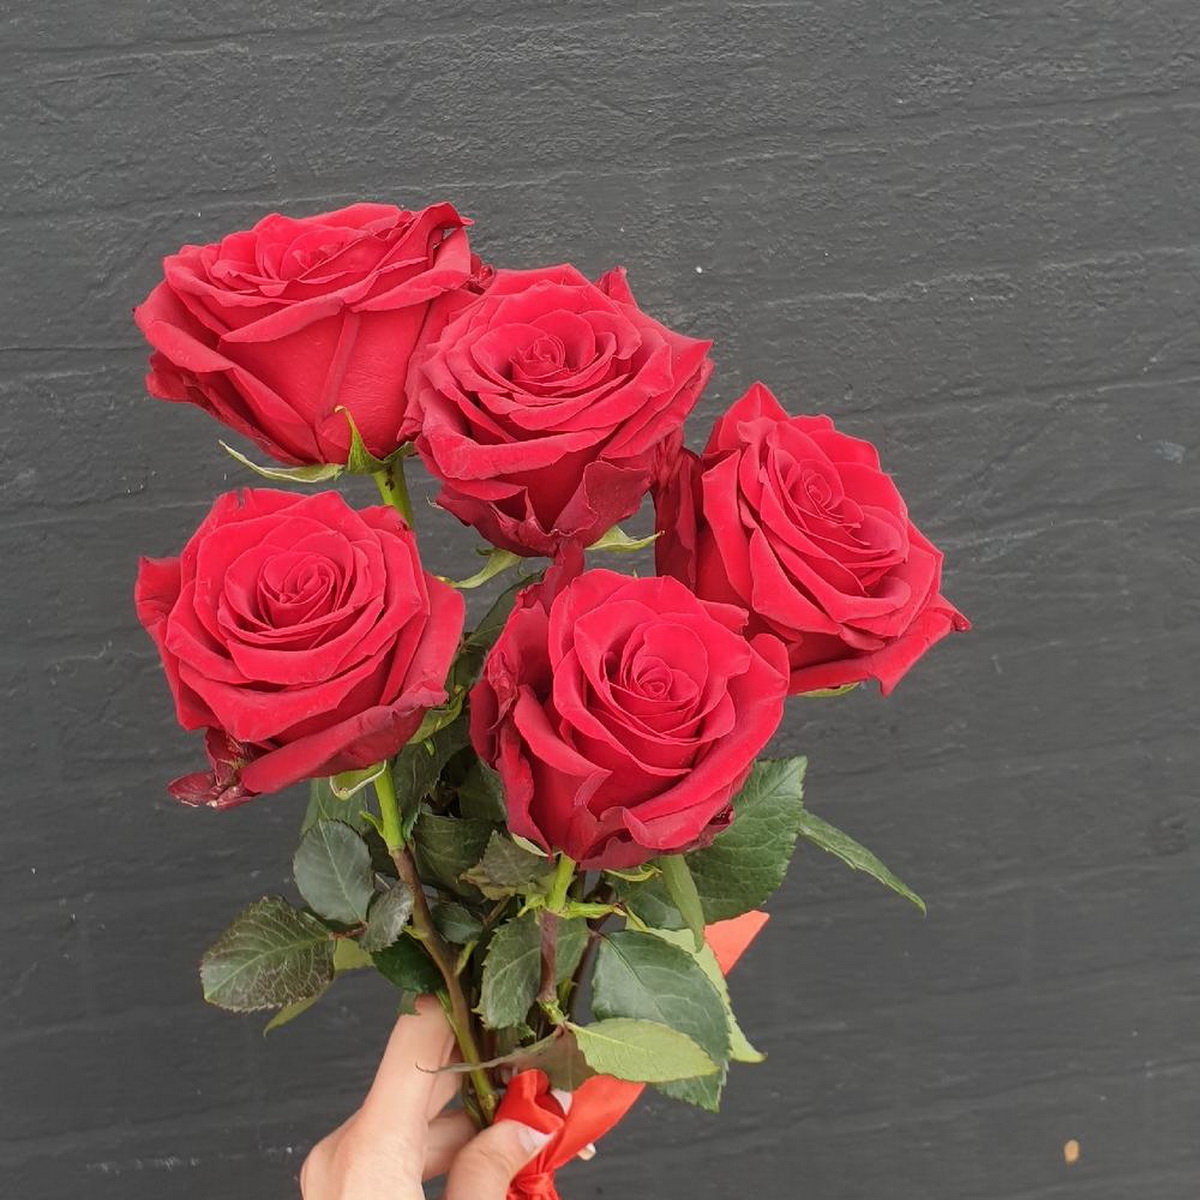 Фото 2 - Букет из 5 красных роз с лентой